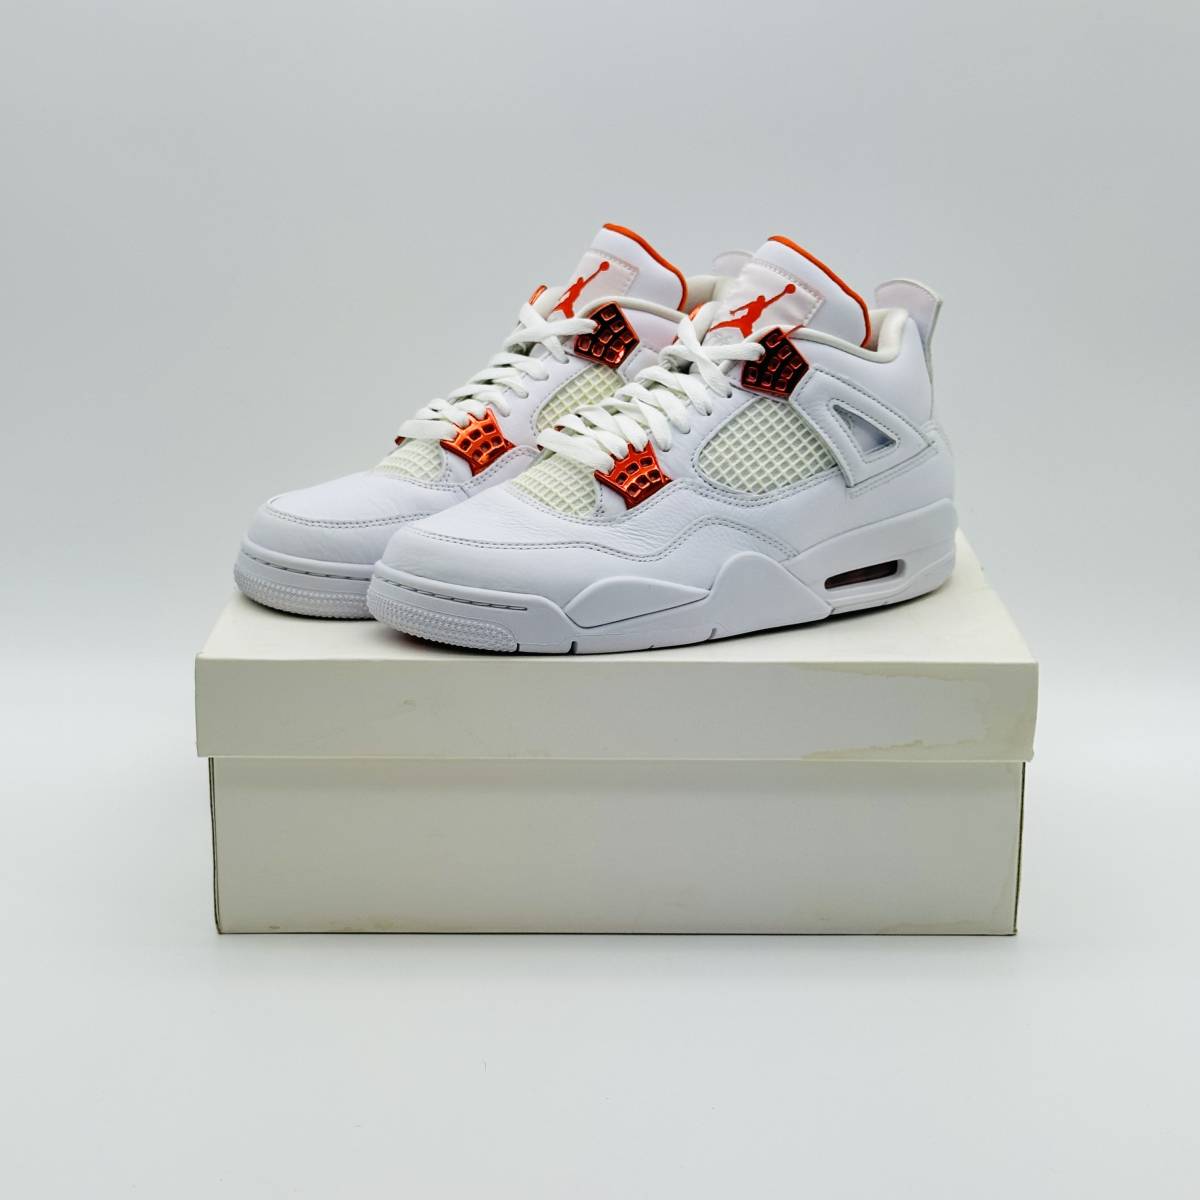 【新品未使用】 Nike Air Jordan 4 Retro White CT8527-118 ナイキ エアジョーダン4 レトロ オレンジメタリック